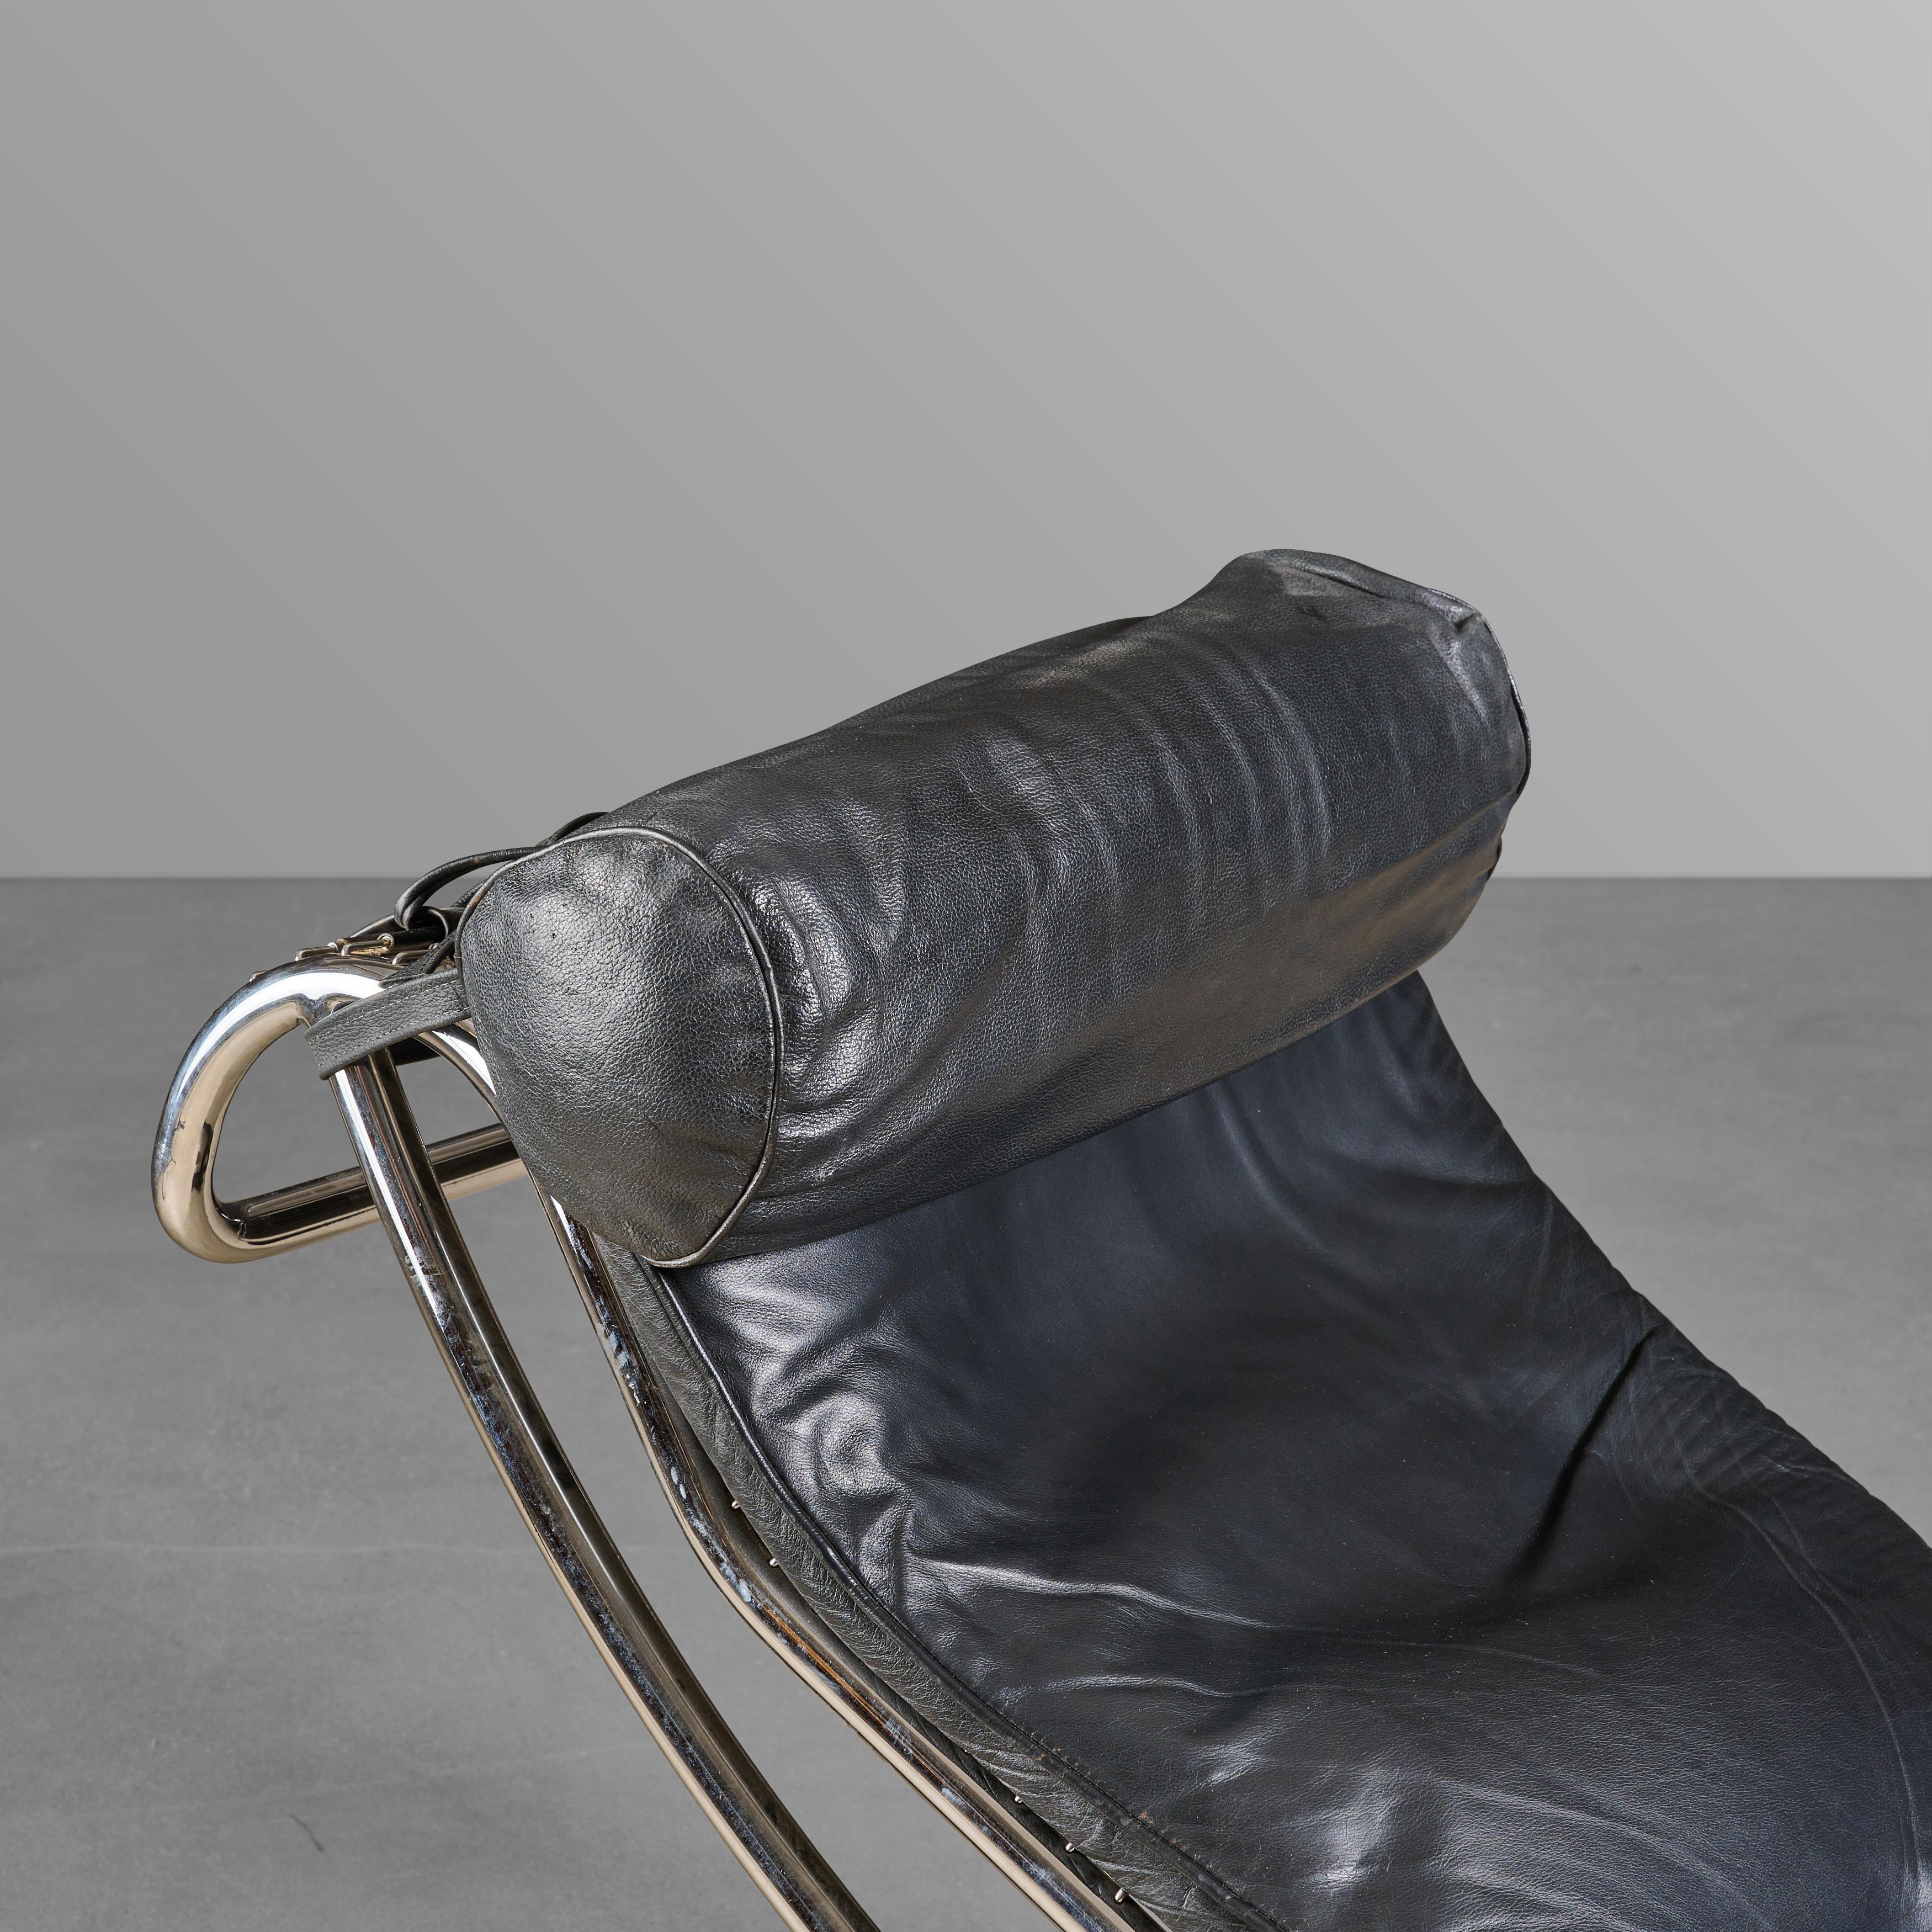 Chaise longue en chrome et cuir sur socle. Conçu par Le Corbusier. Fantastique.

 